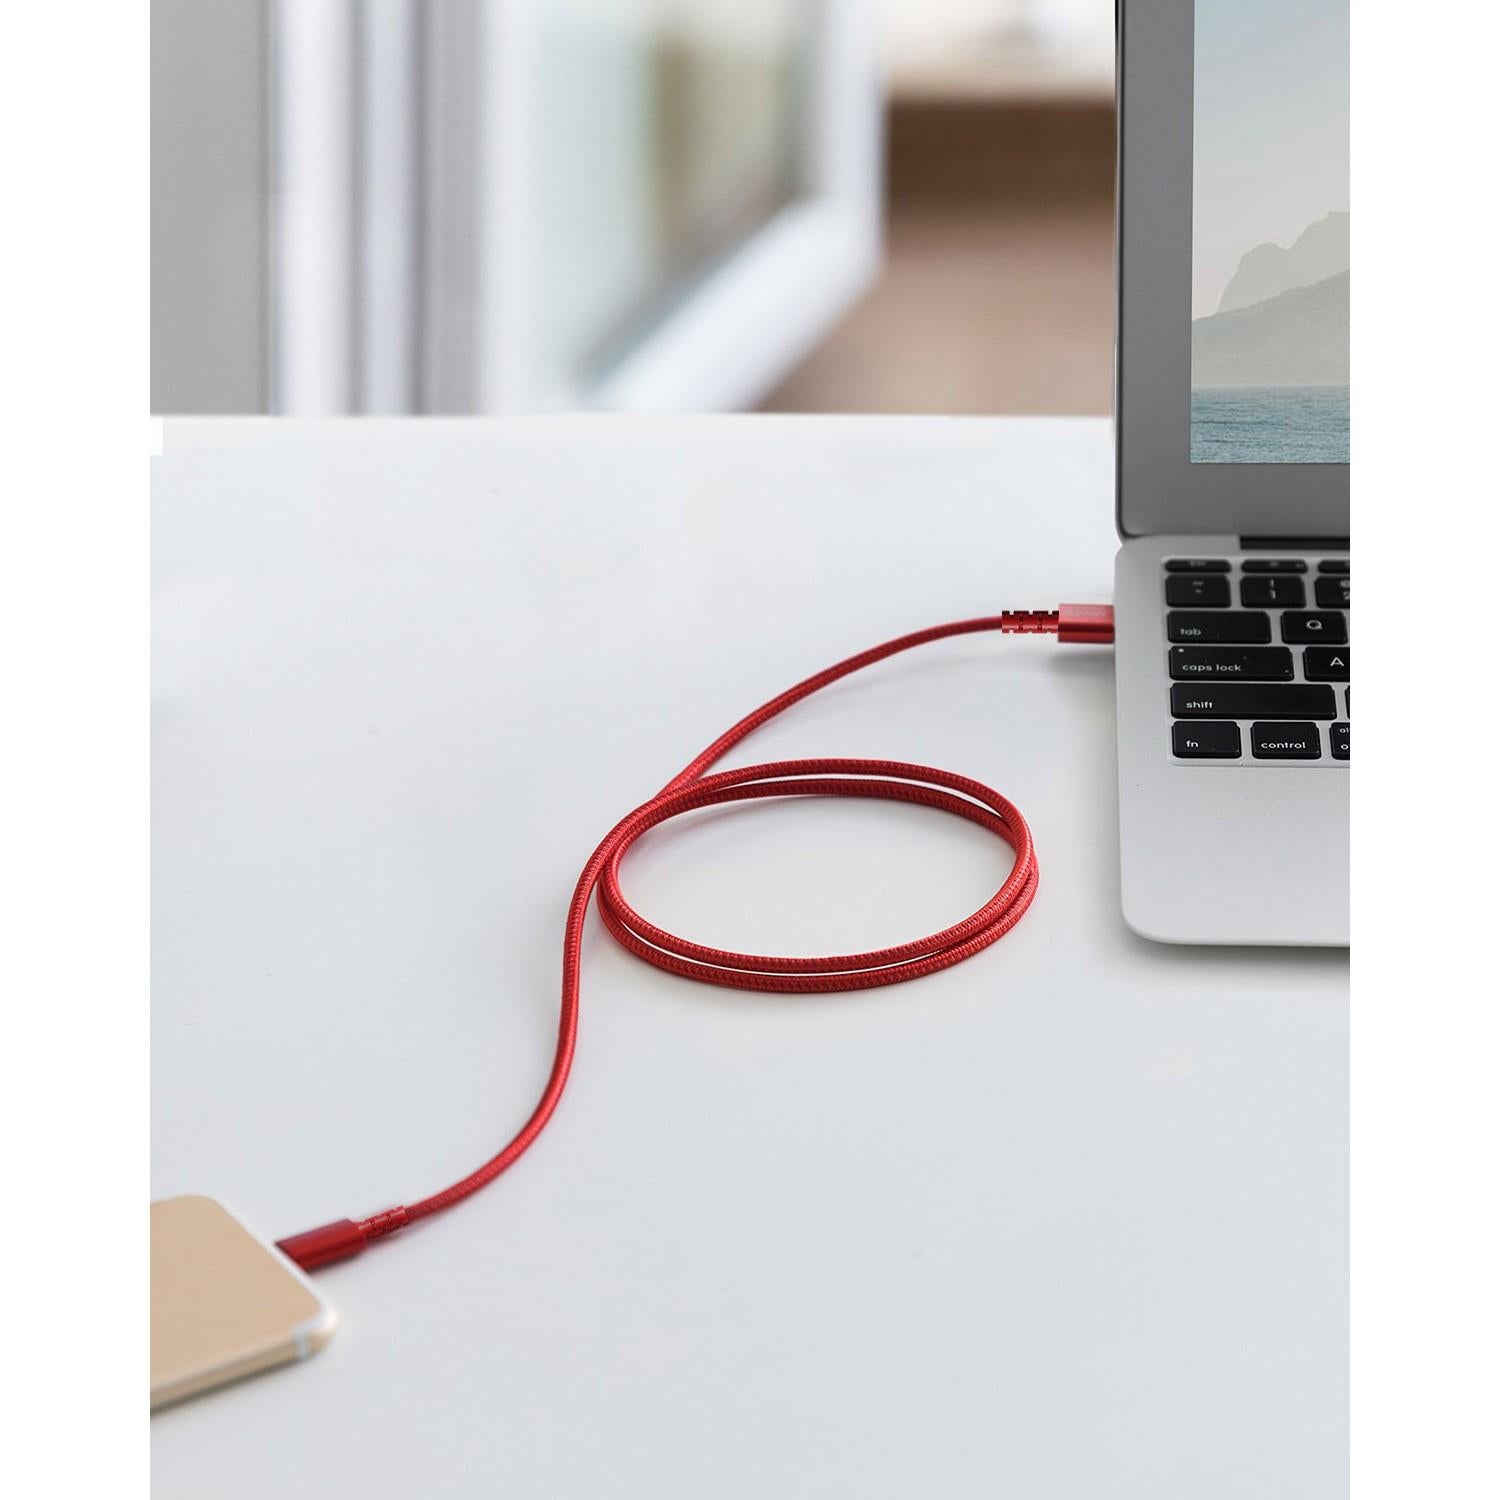 Anker PowerLine Select+ Apple Lightning 0.9 Metre USB Data/Şarj Kablosu - Kırmızı - MFI Lisanslı